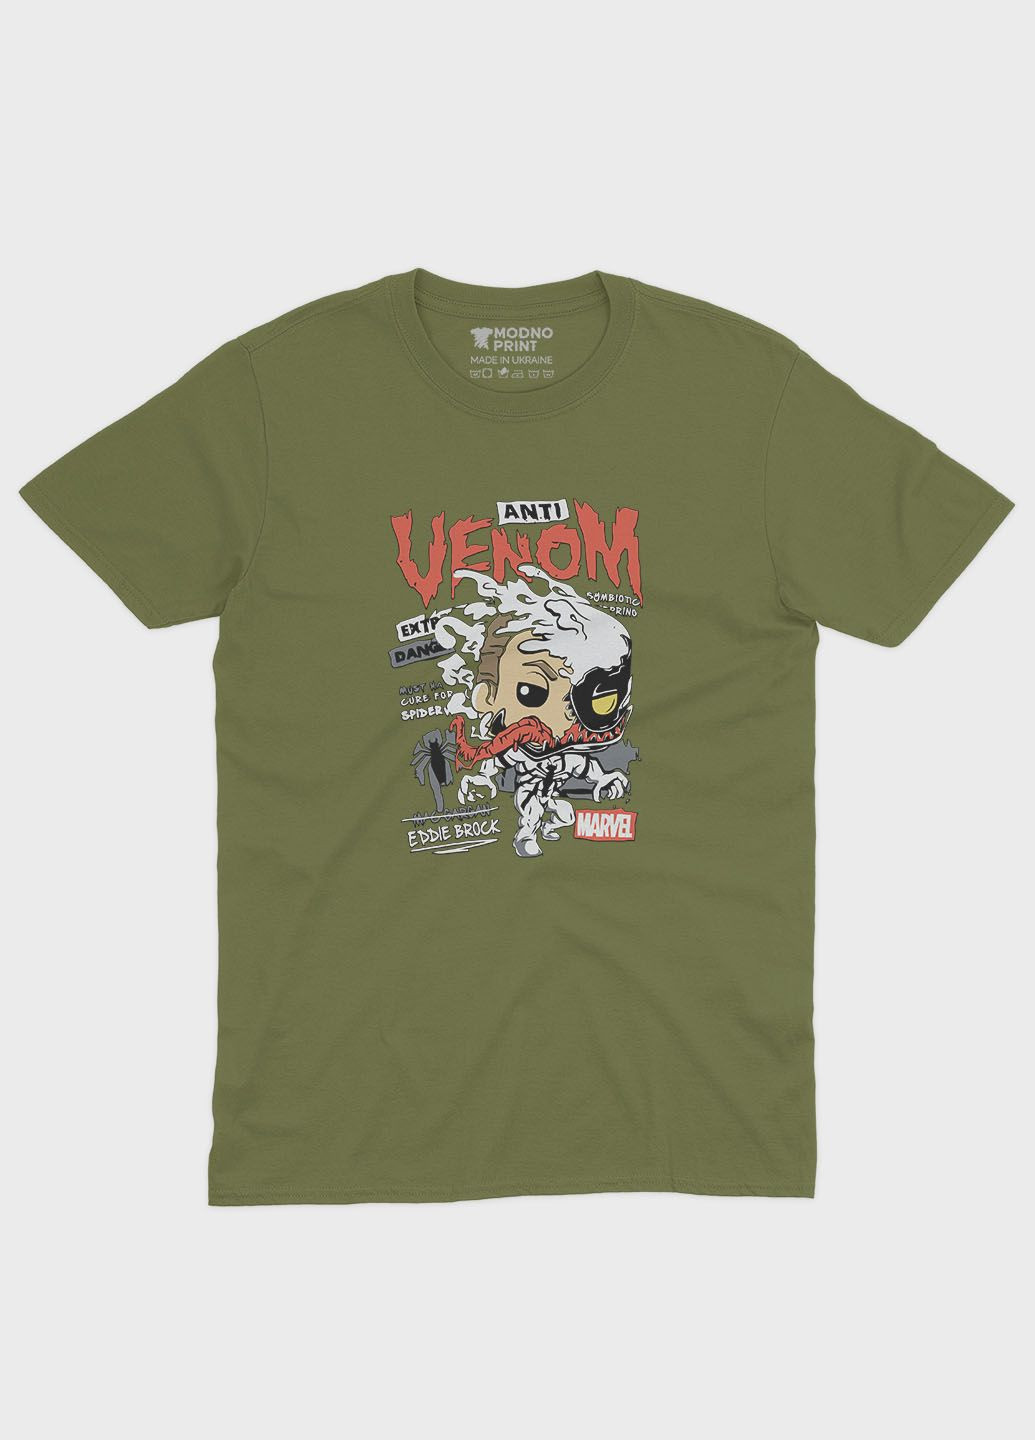 Хаки (оливковая) мужская футболка с принтом супервора - веном (ts001-1-hgr-006-013-018) Modno